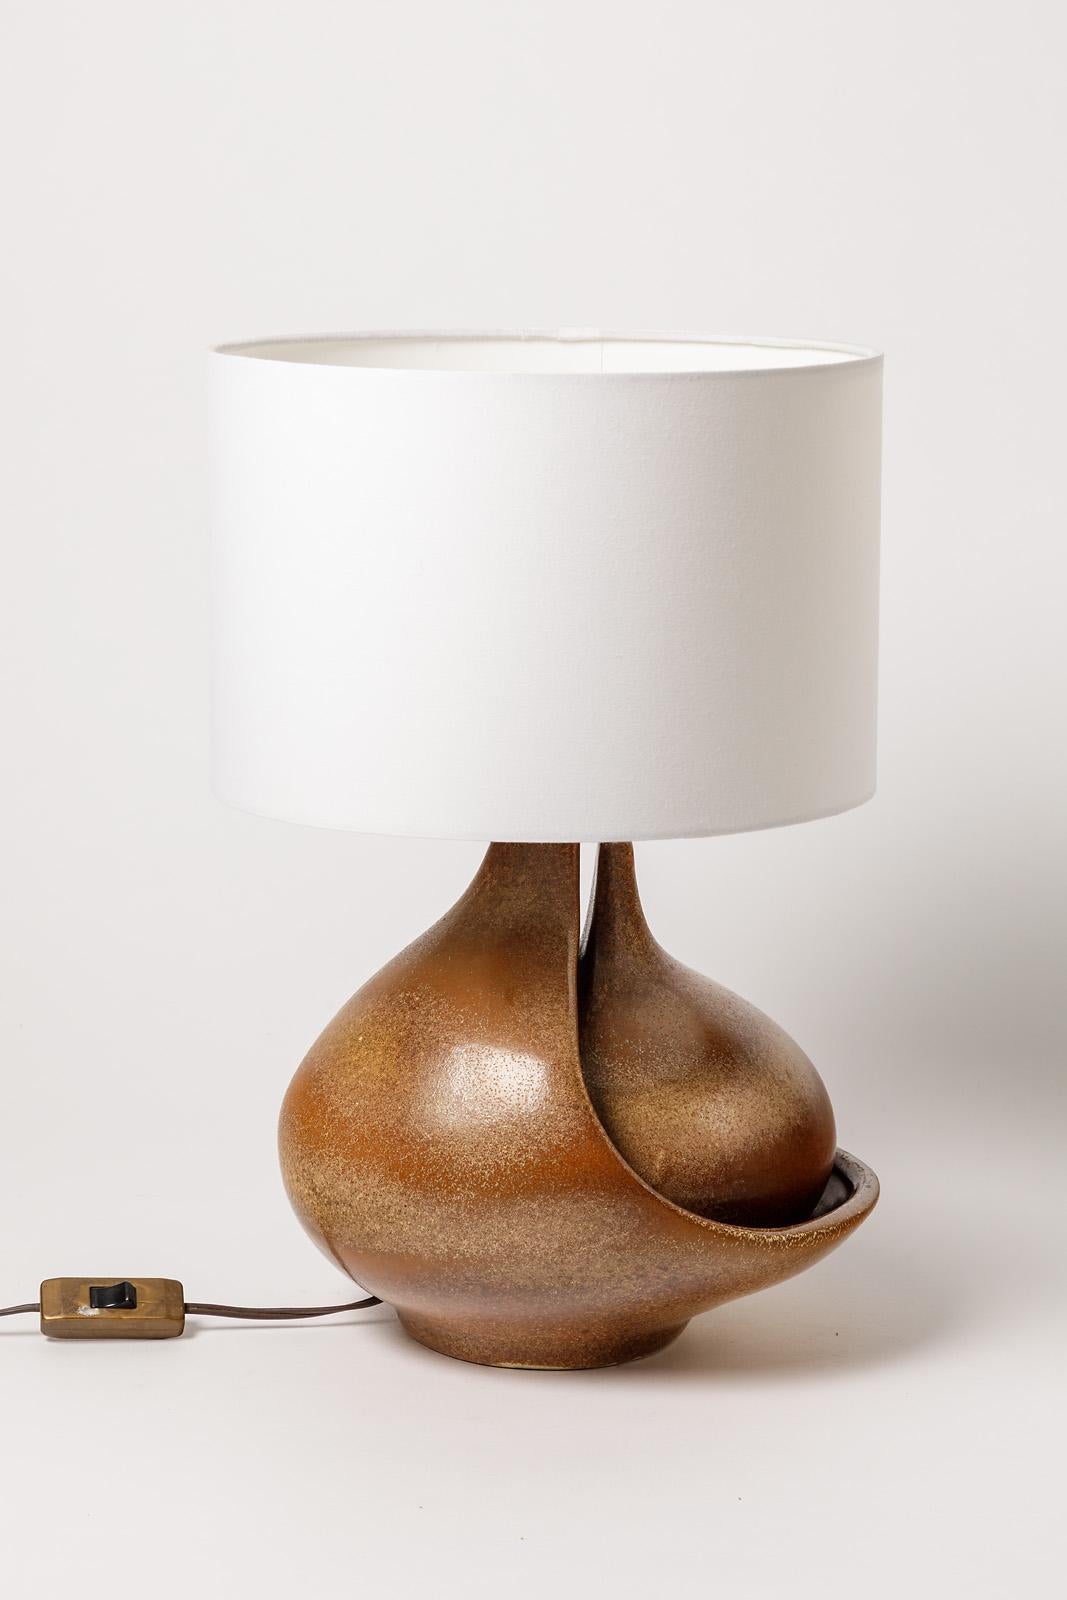 Fred Stocker

Originelle und elegante Keramik-Tischlampe in zwei Teilen.

Realisiert um 1970, signiert unter dem Sockel.

Elegante hellbraune Keramikglasurfarbe.

Verkauft ohne Lampenschirm

Abmessungen der Keramik: Höhe 30cm, groß 26cm,